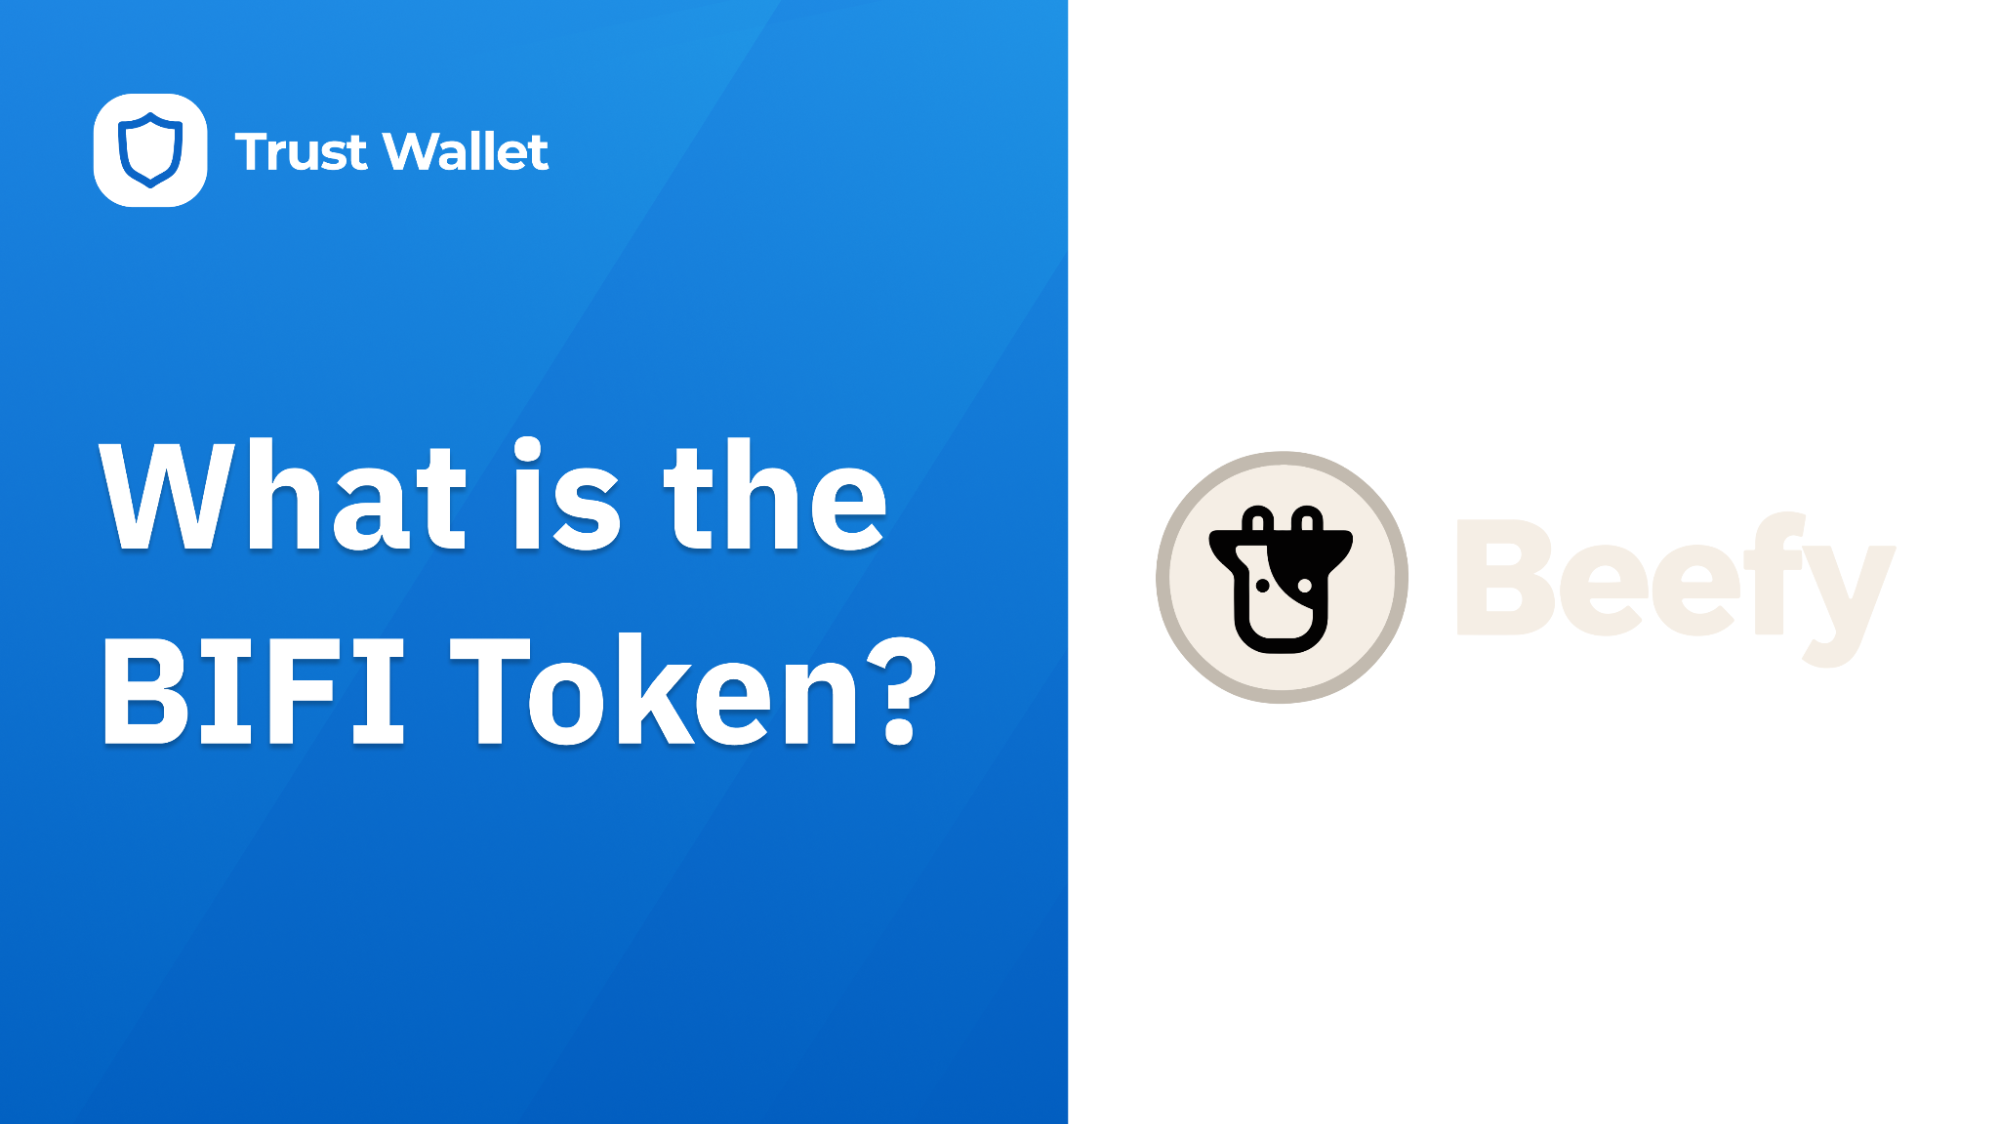 What is the BIFI token?